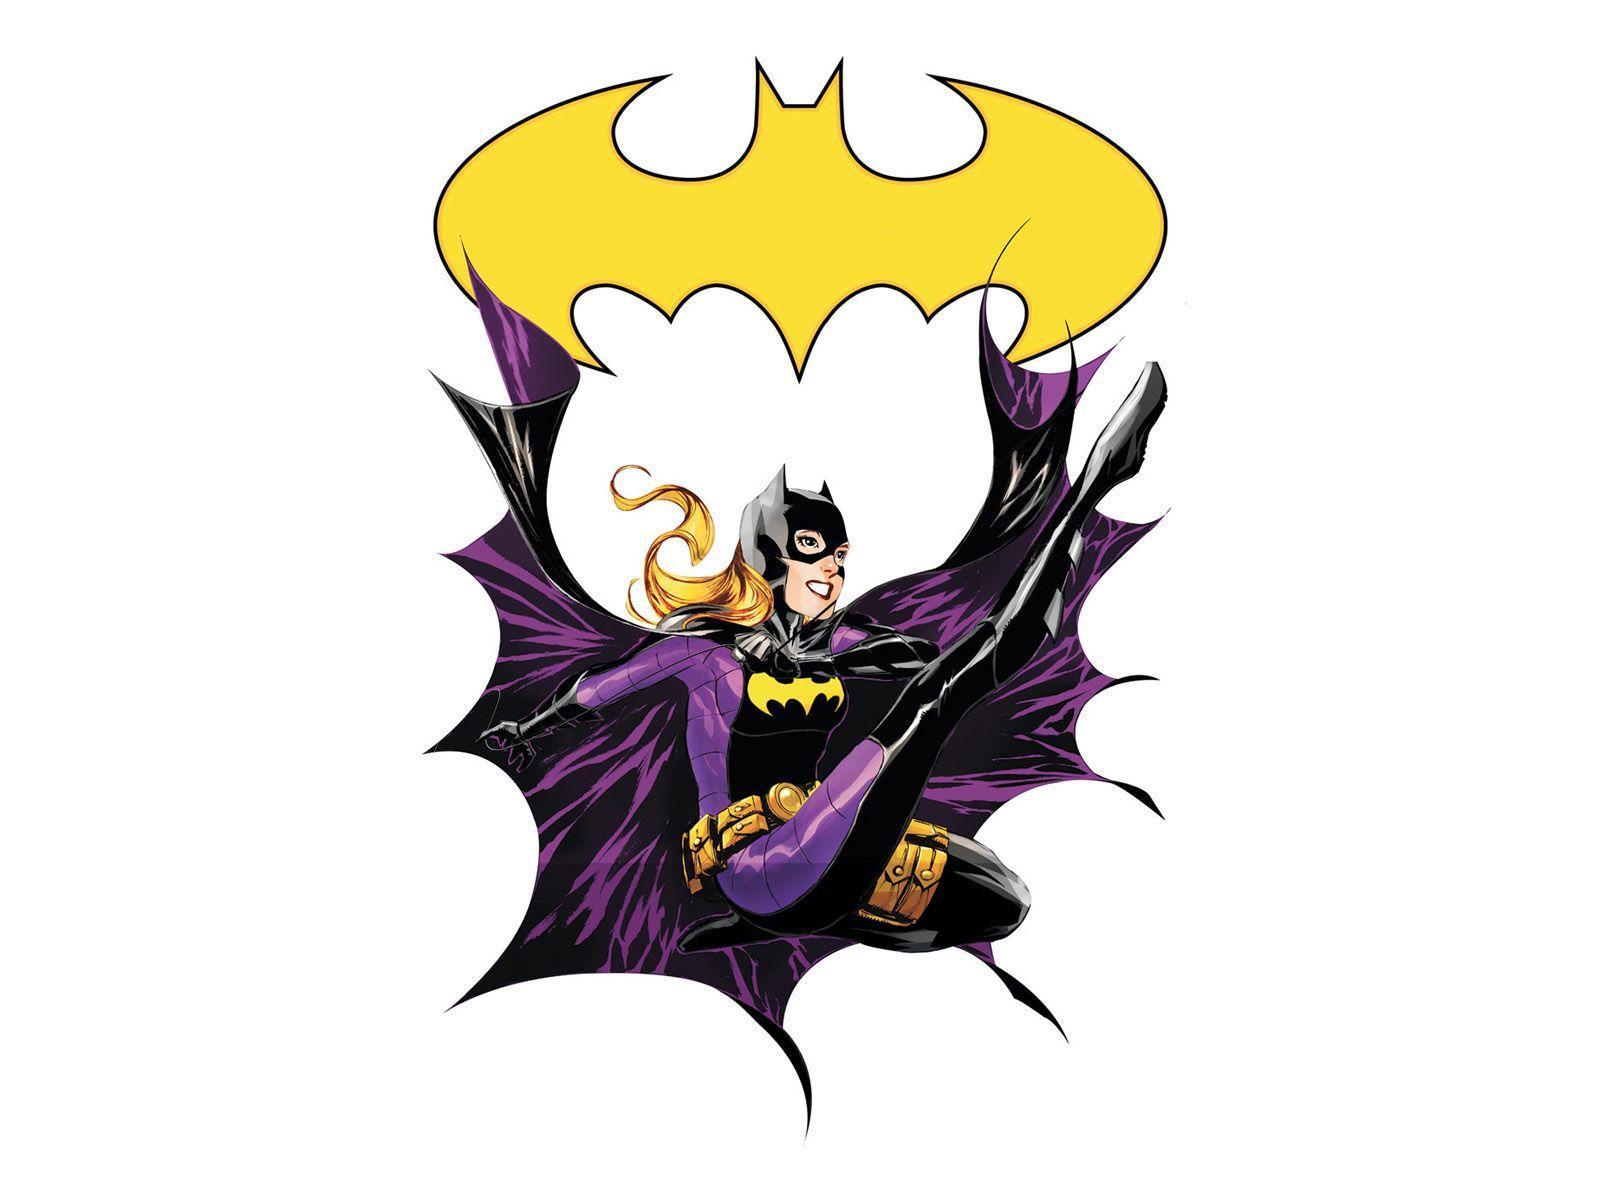 Batgirl HD Wallpaper